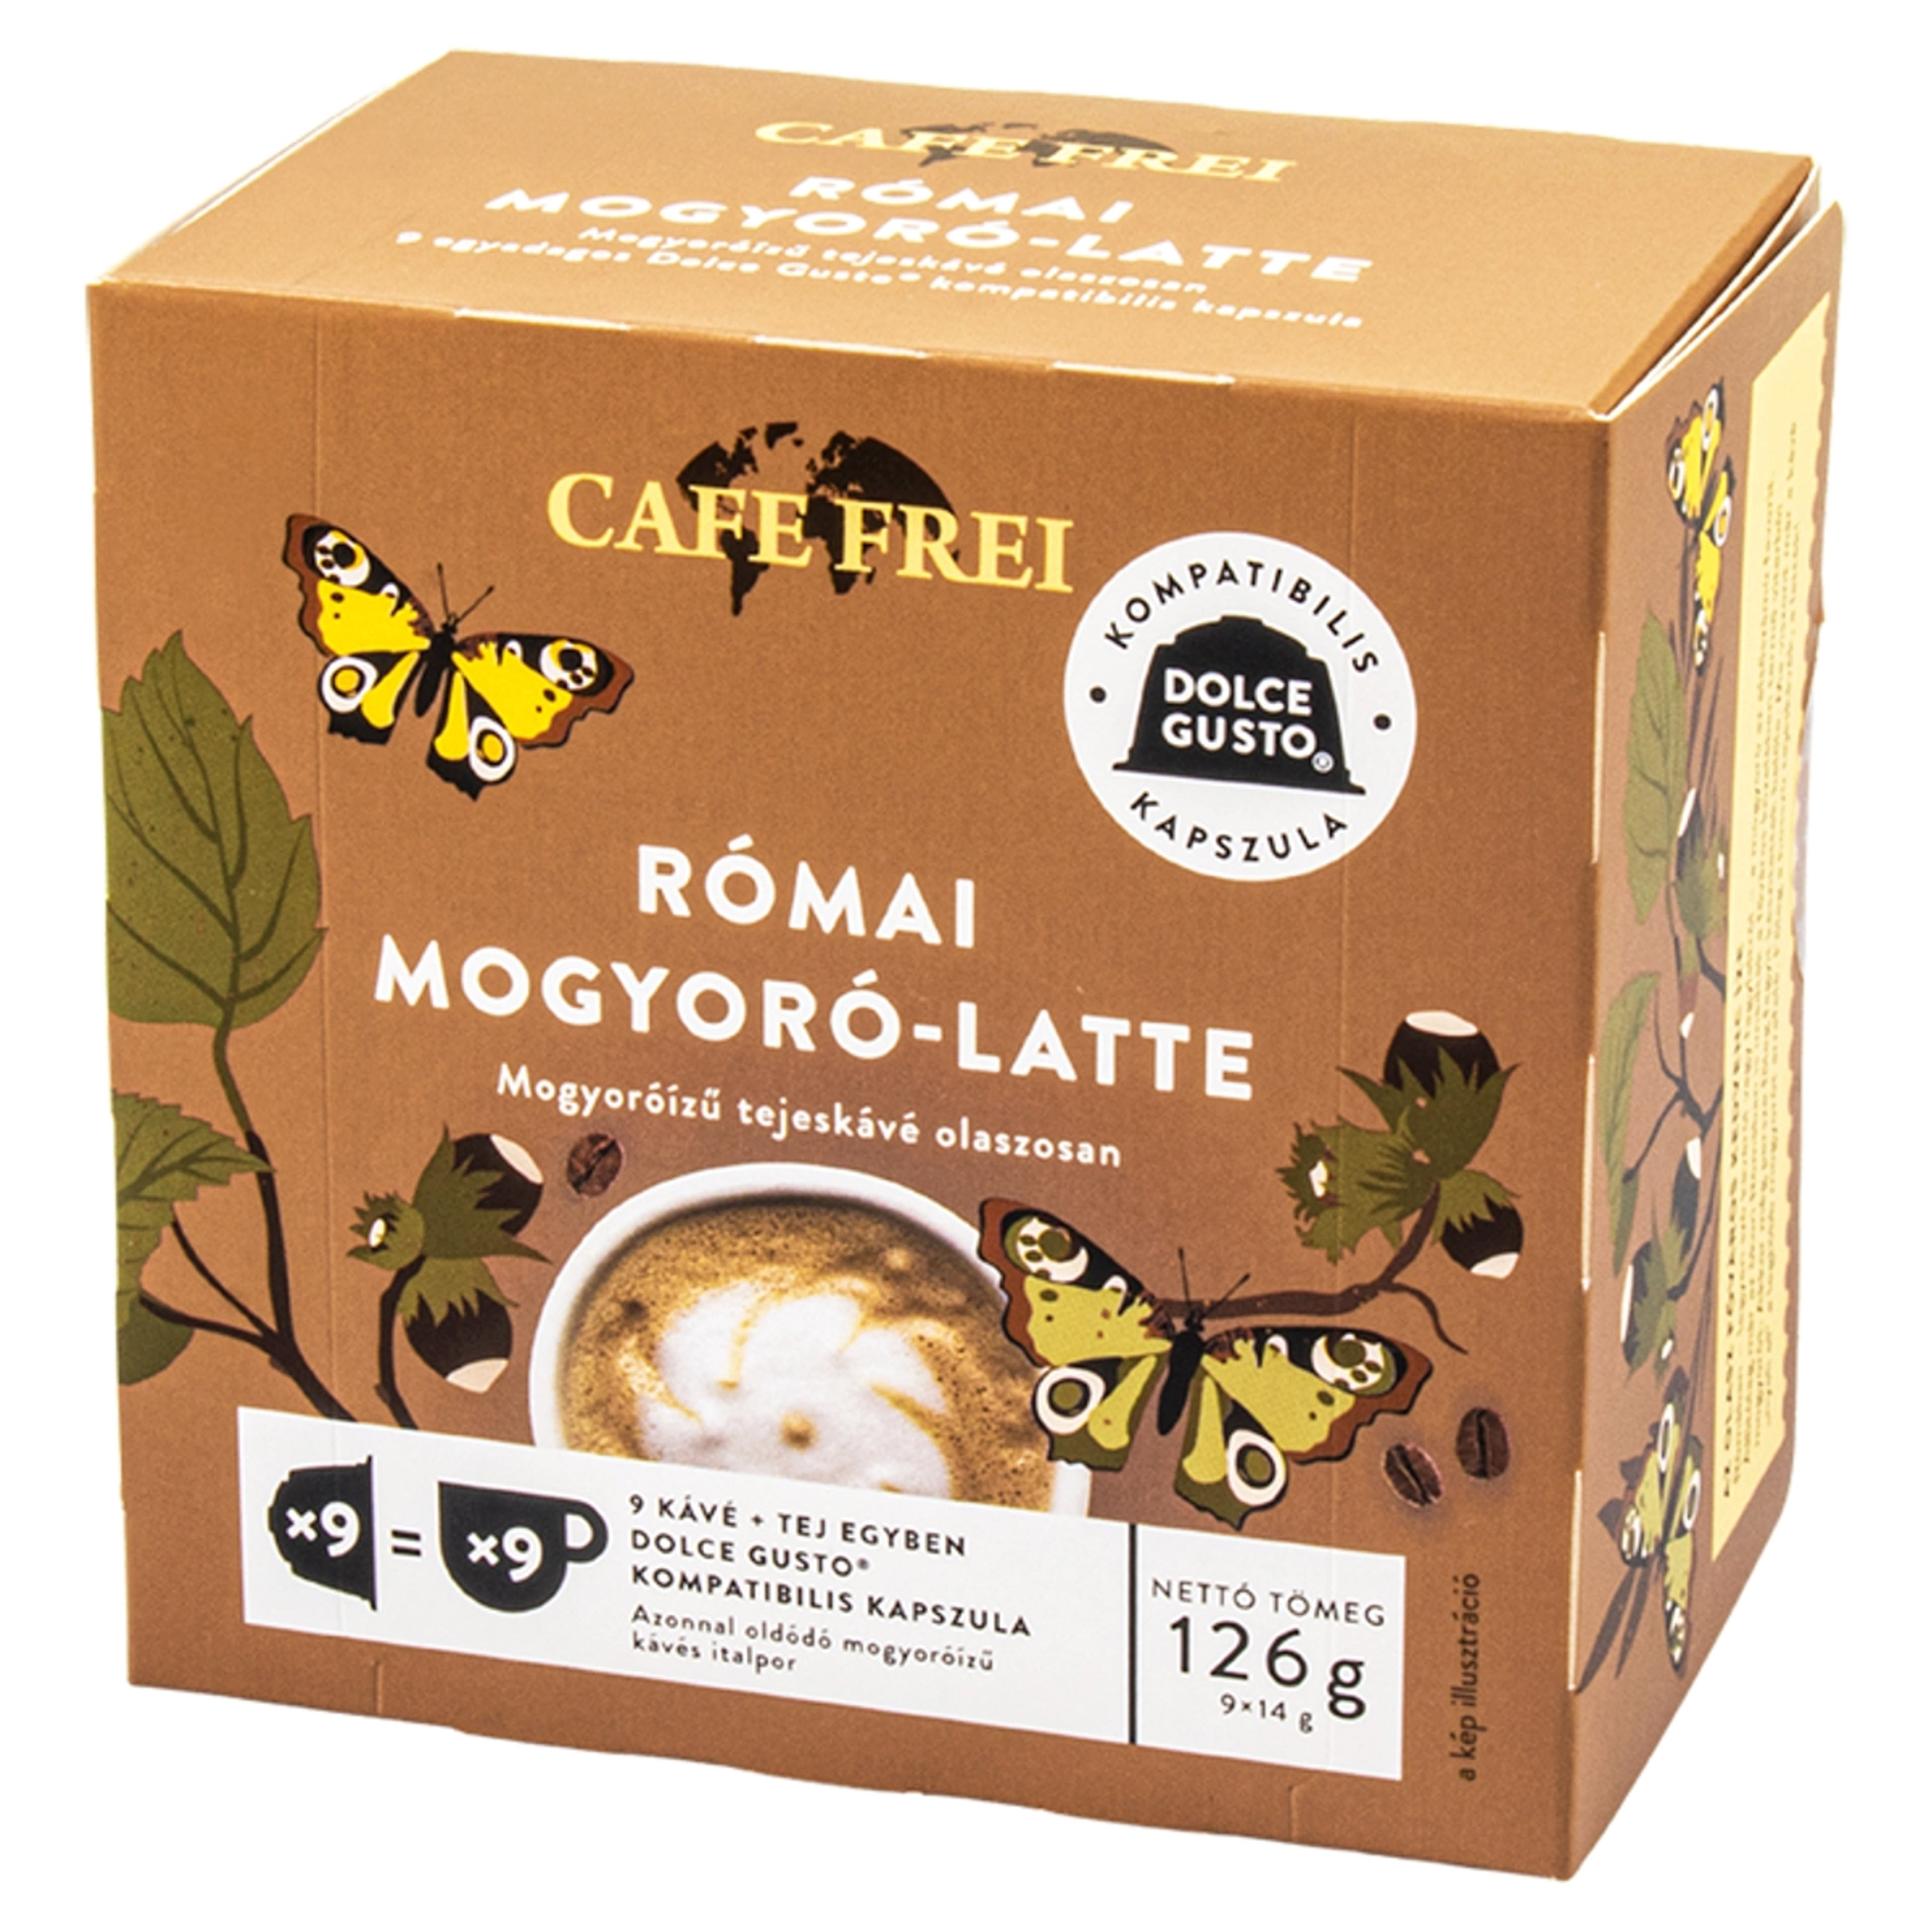 Cafe Frei Római Mogyoró Latte mogyoróízű tejeskávé kapszula - 9 db